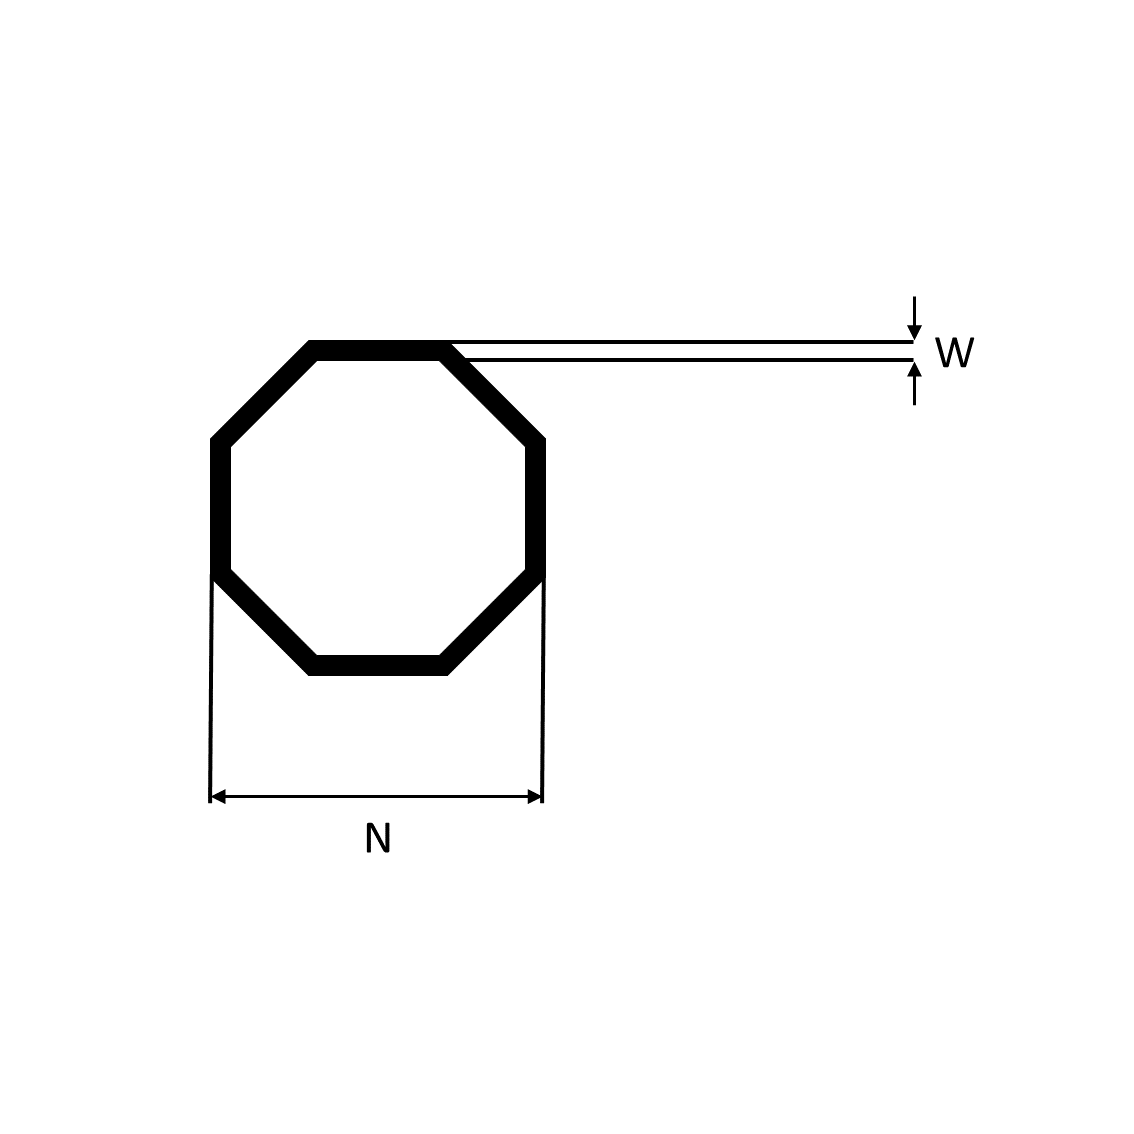 Octagonal tube - octagonal inside, Nickel silver